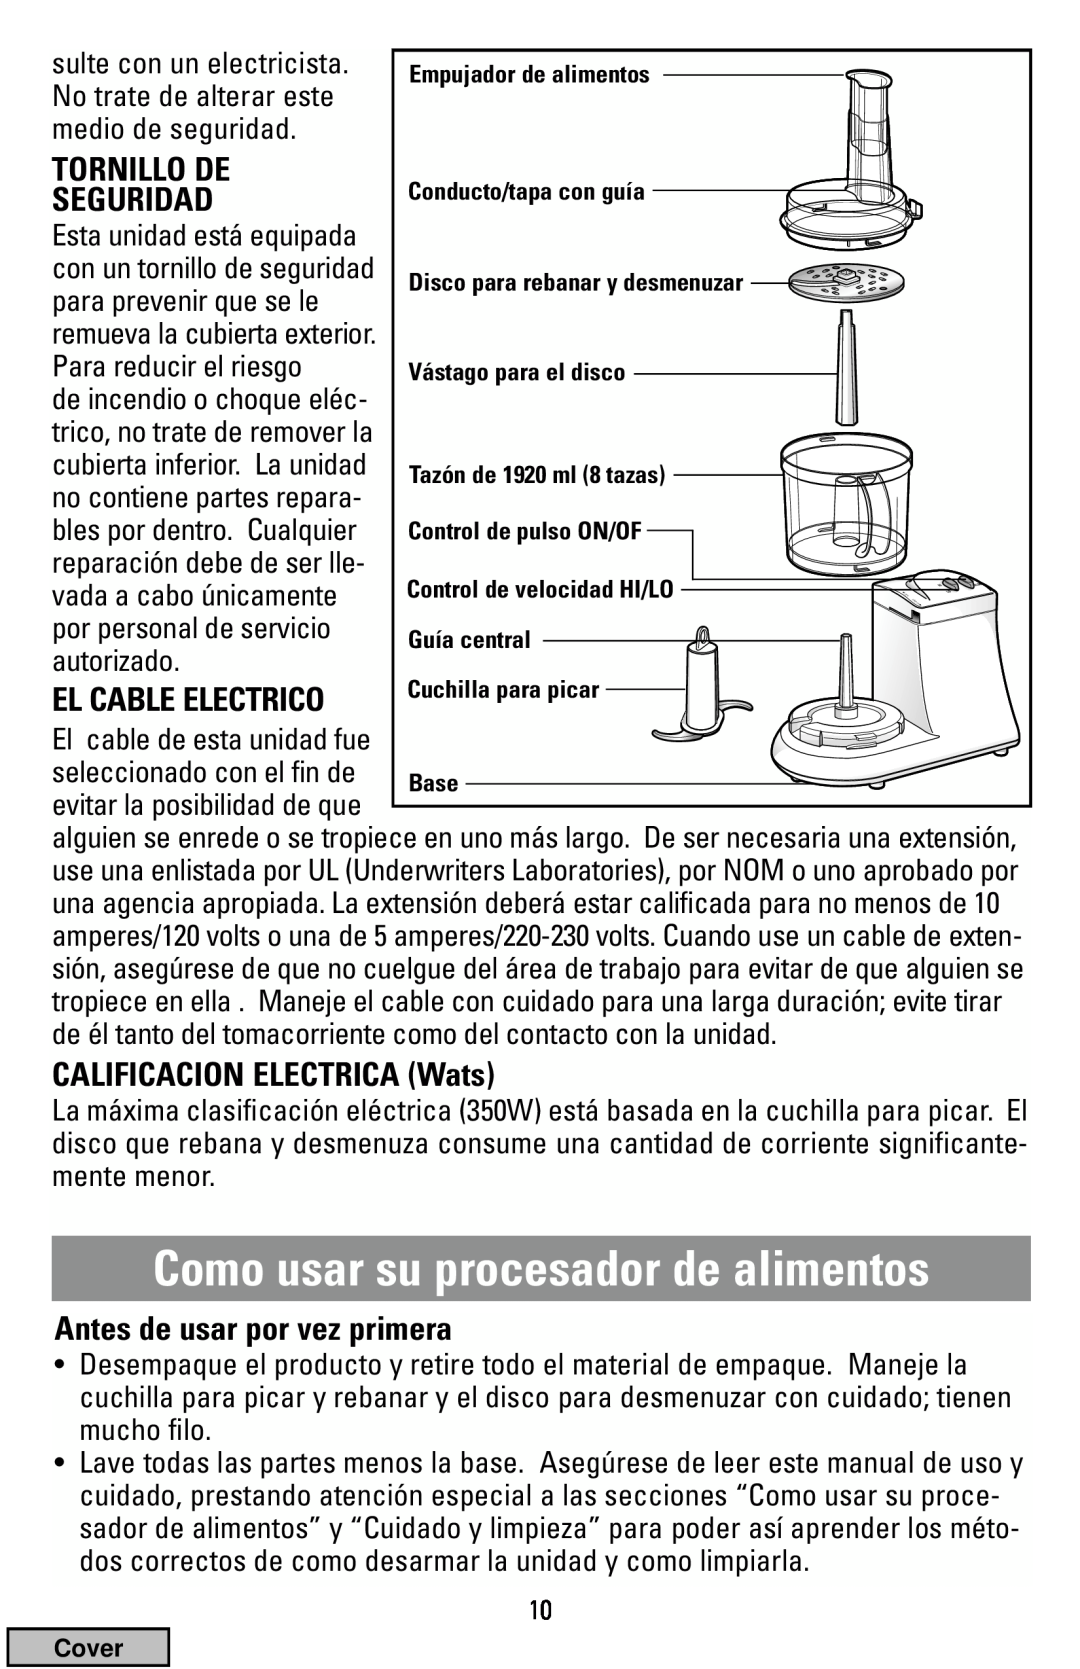 Black & Decker FP1200 manual Como usar su procesador de alimentos, Tornillo De, Seguridad, CALIFICACION ELECTRICA Wats 